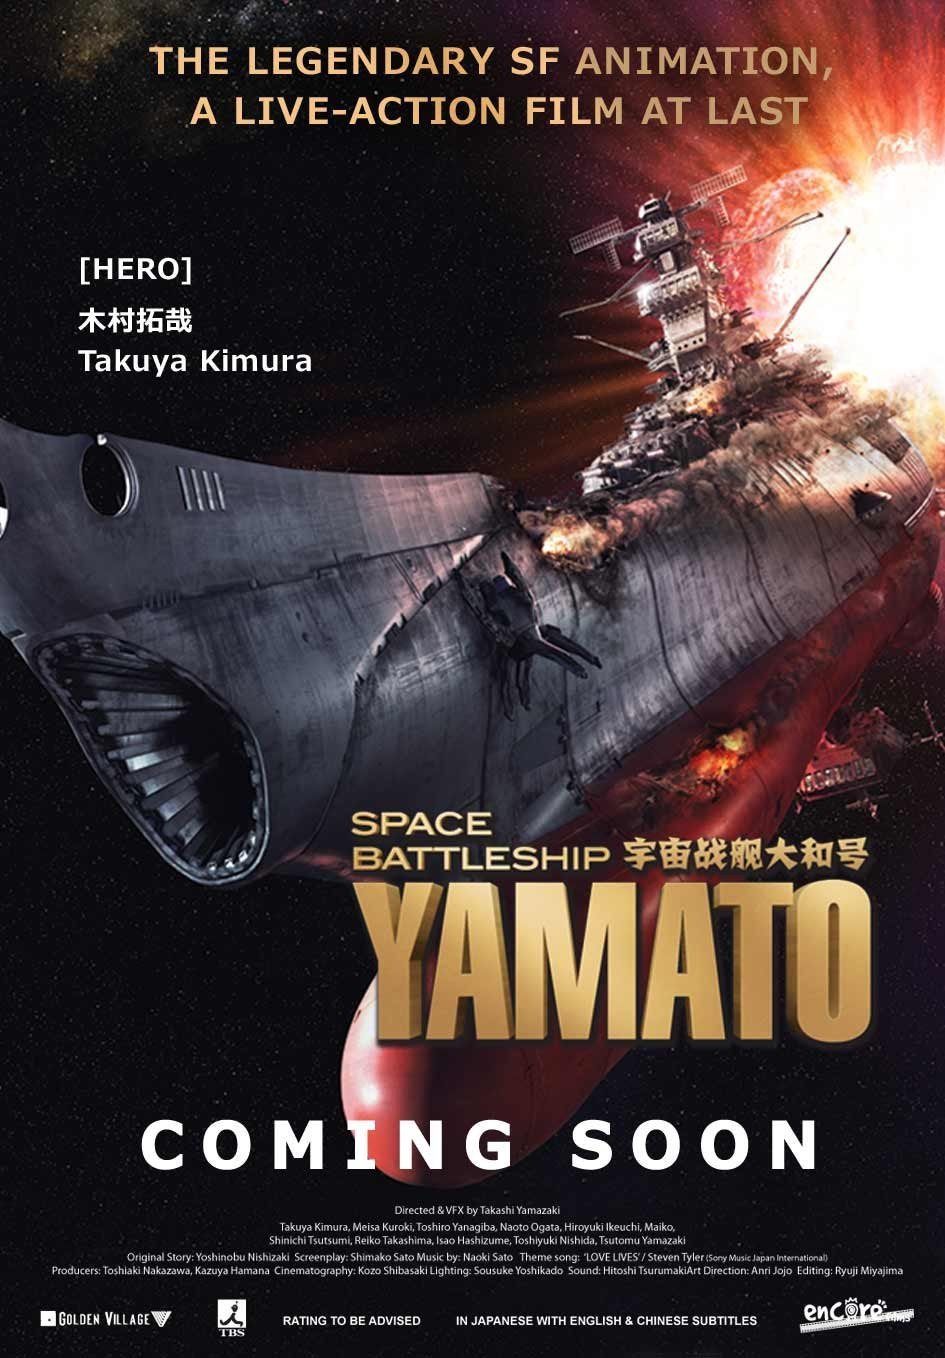 [JEU] Question pour un cinéphile - Page 23 Space-battleship-yamato-2010-orig-poster